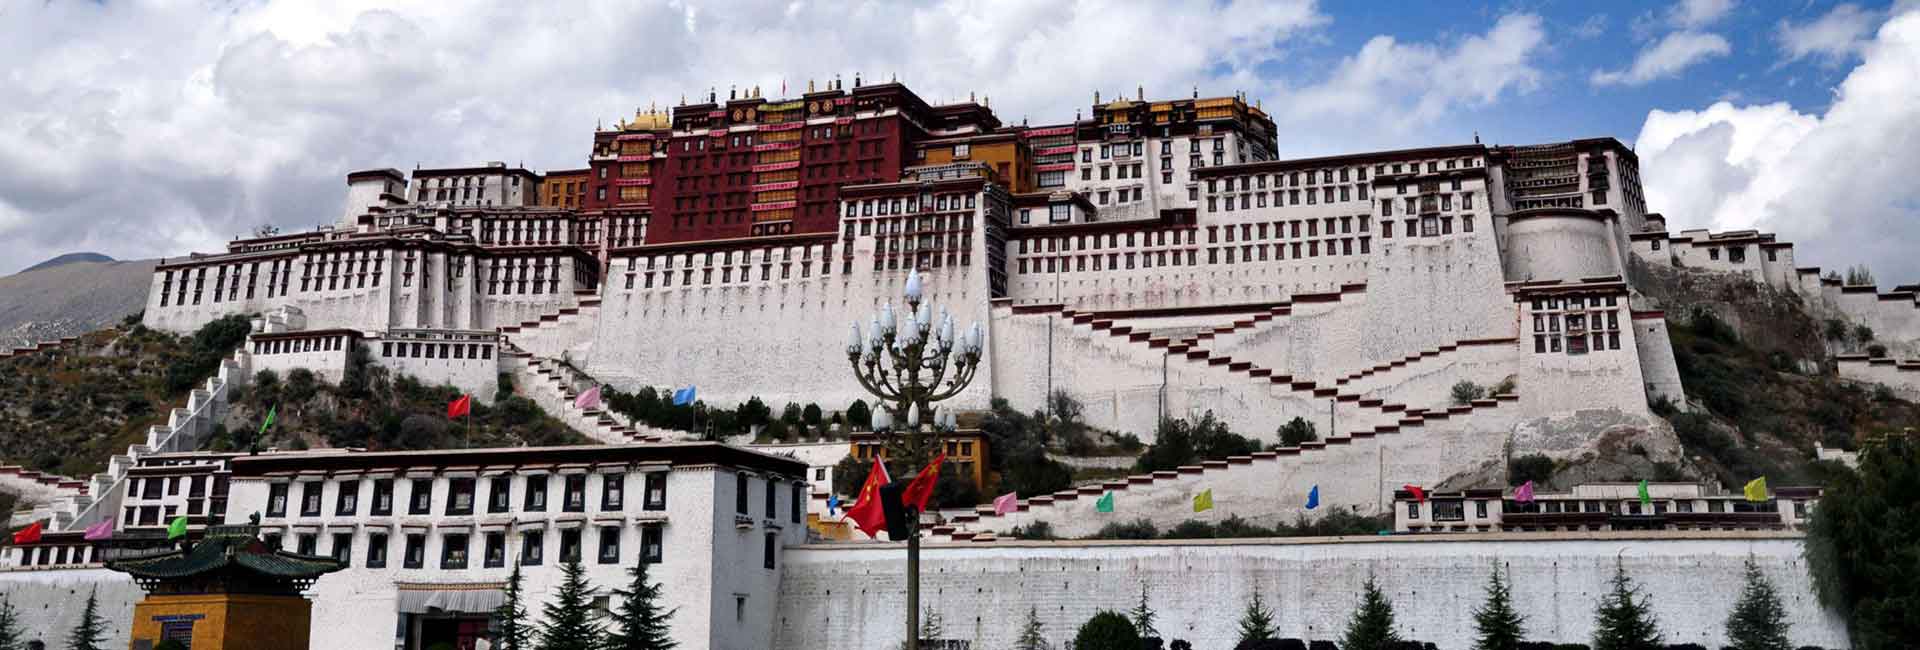 Lhasa - Palacio Pótala, Viajes Tibet